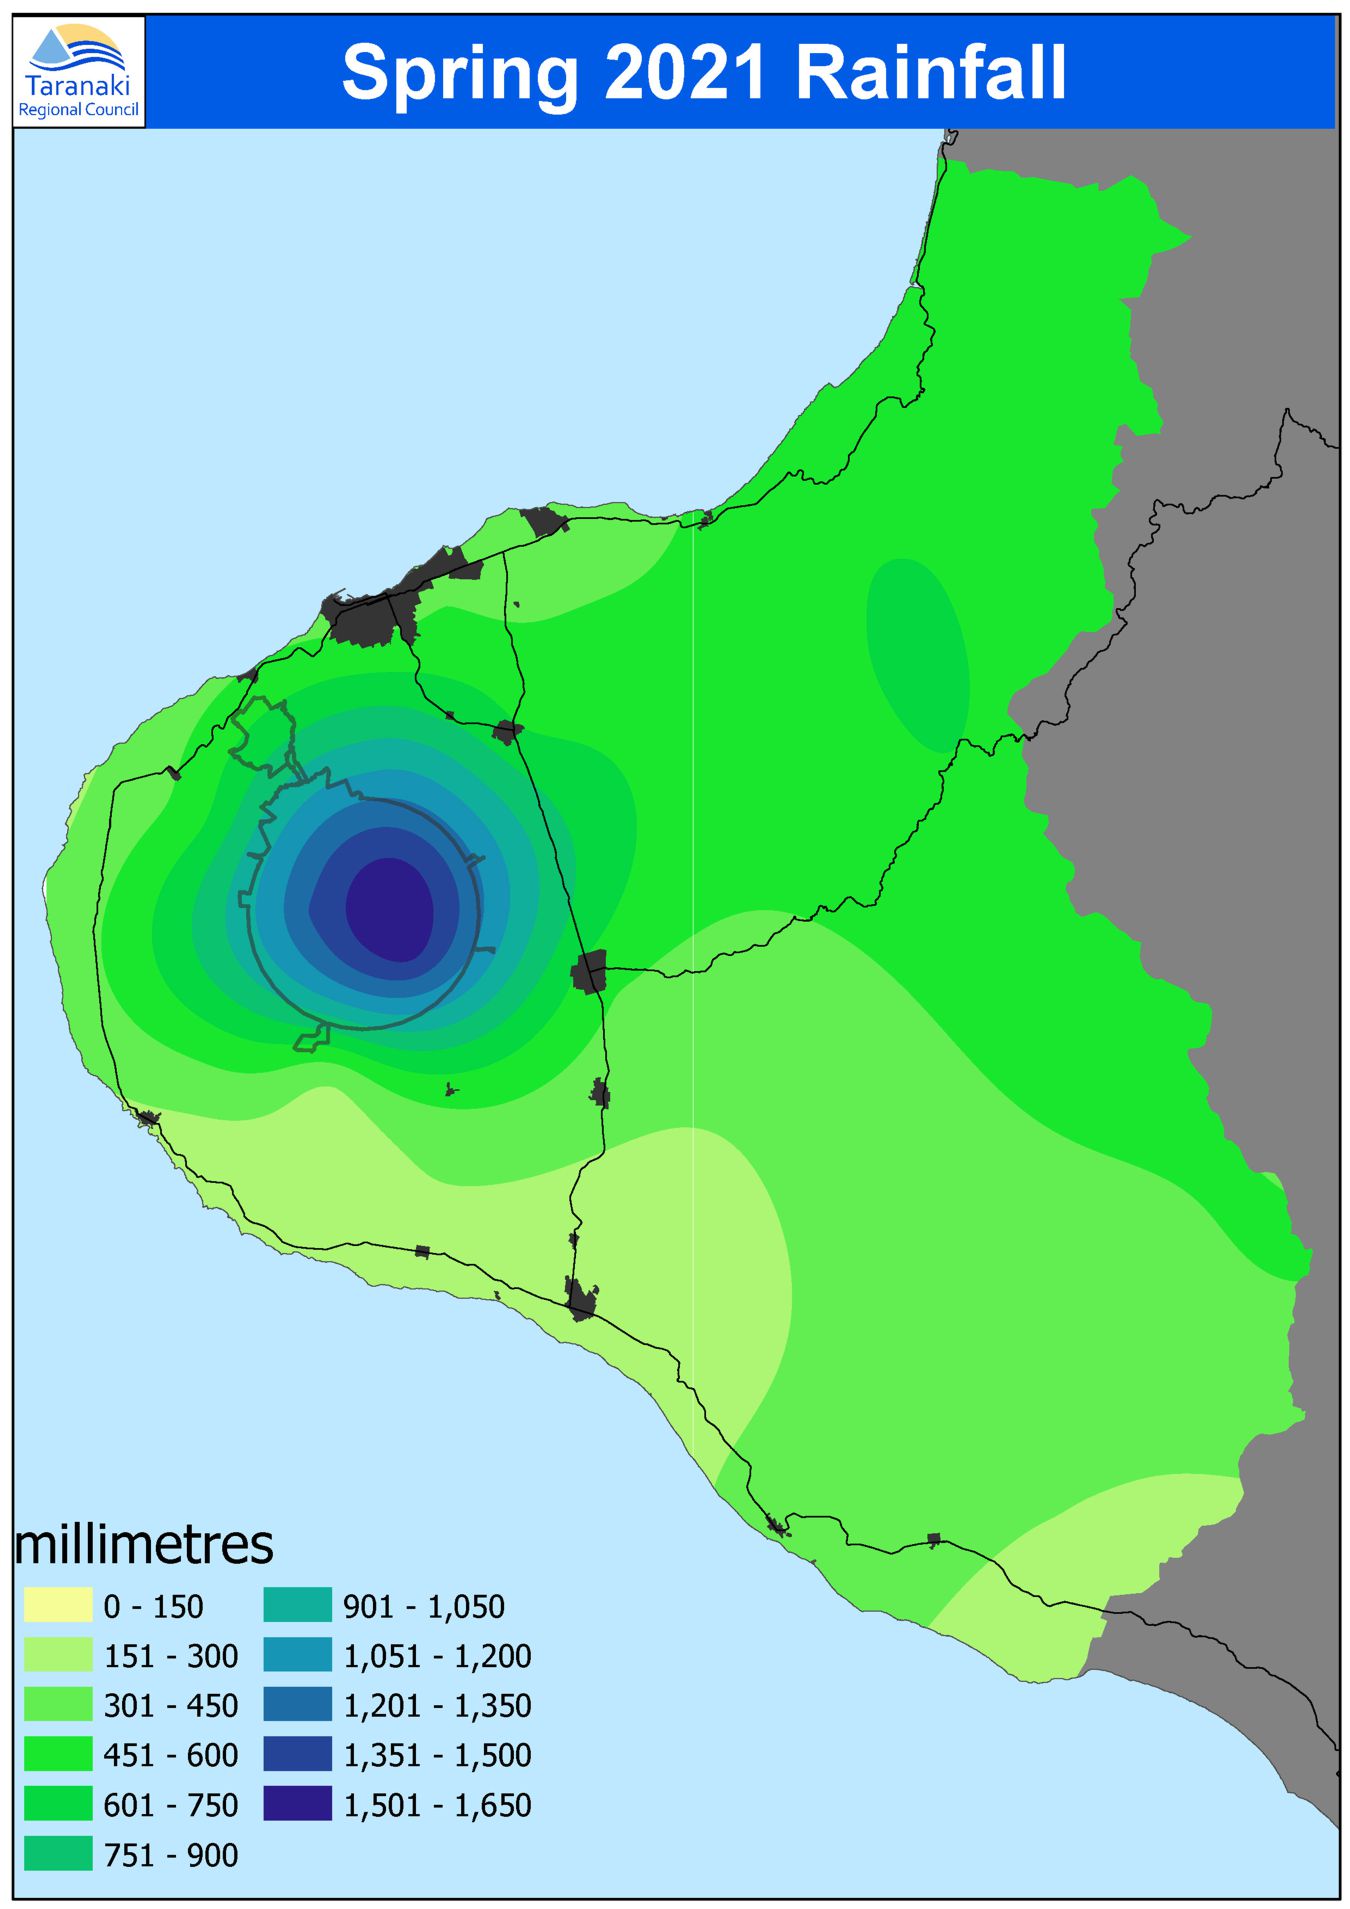 Spring 2021 rainfall disribution (isohyet map)